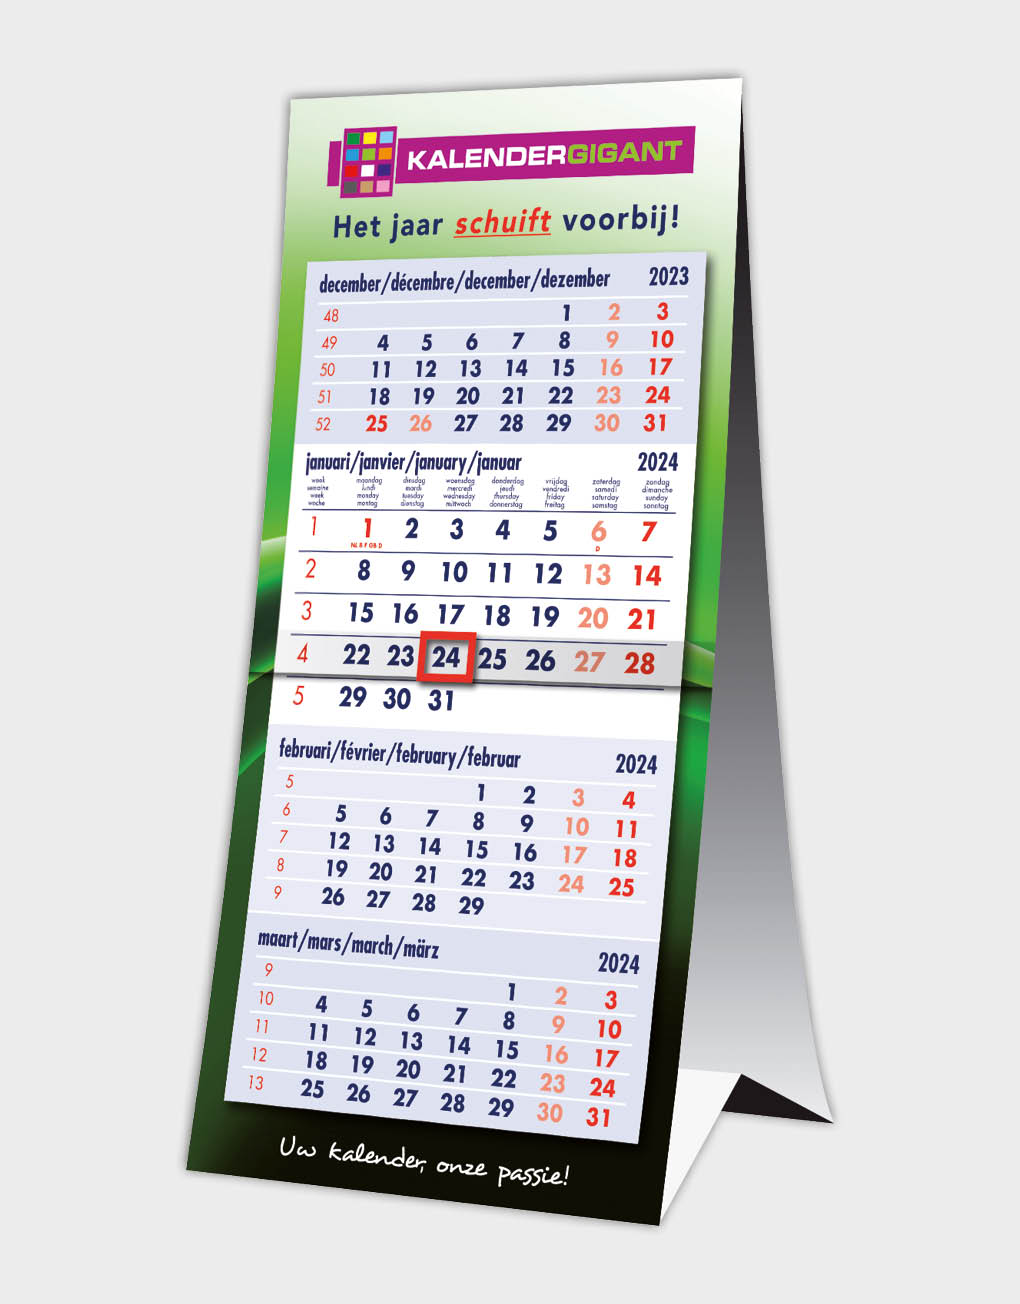 Platteland boerderij kwaad 4-maandskalenders 2023 - Kalendergigant